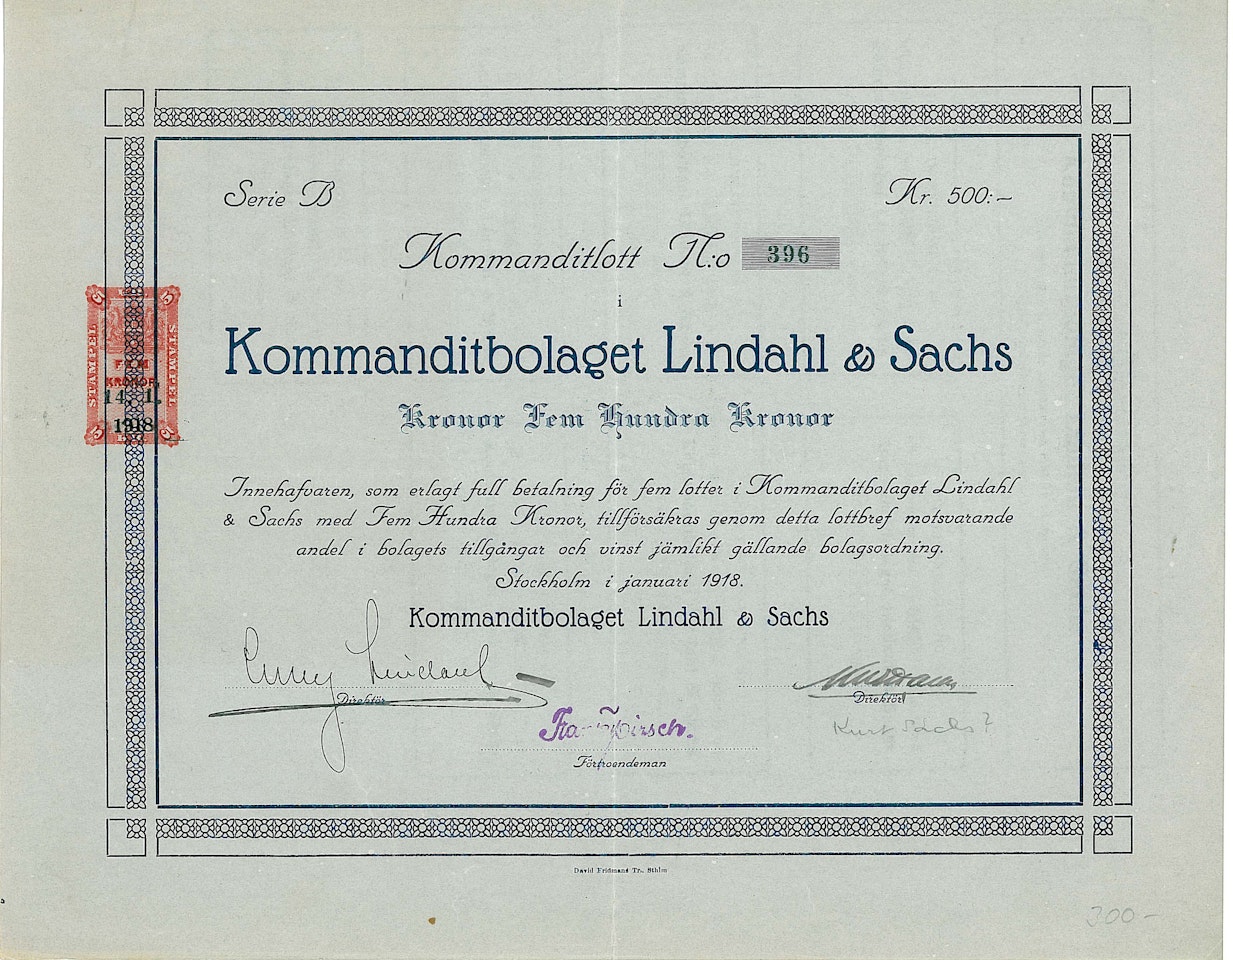 Kommanditbolaget Lindahl & Sachs